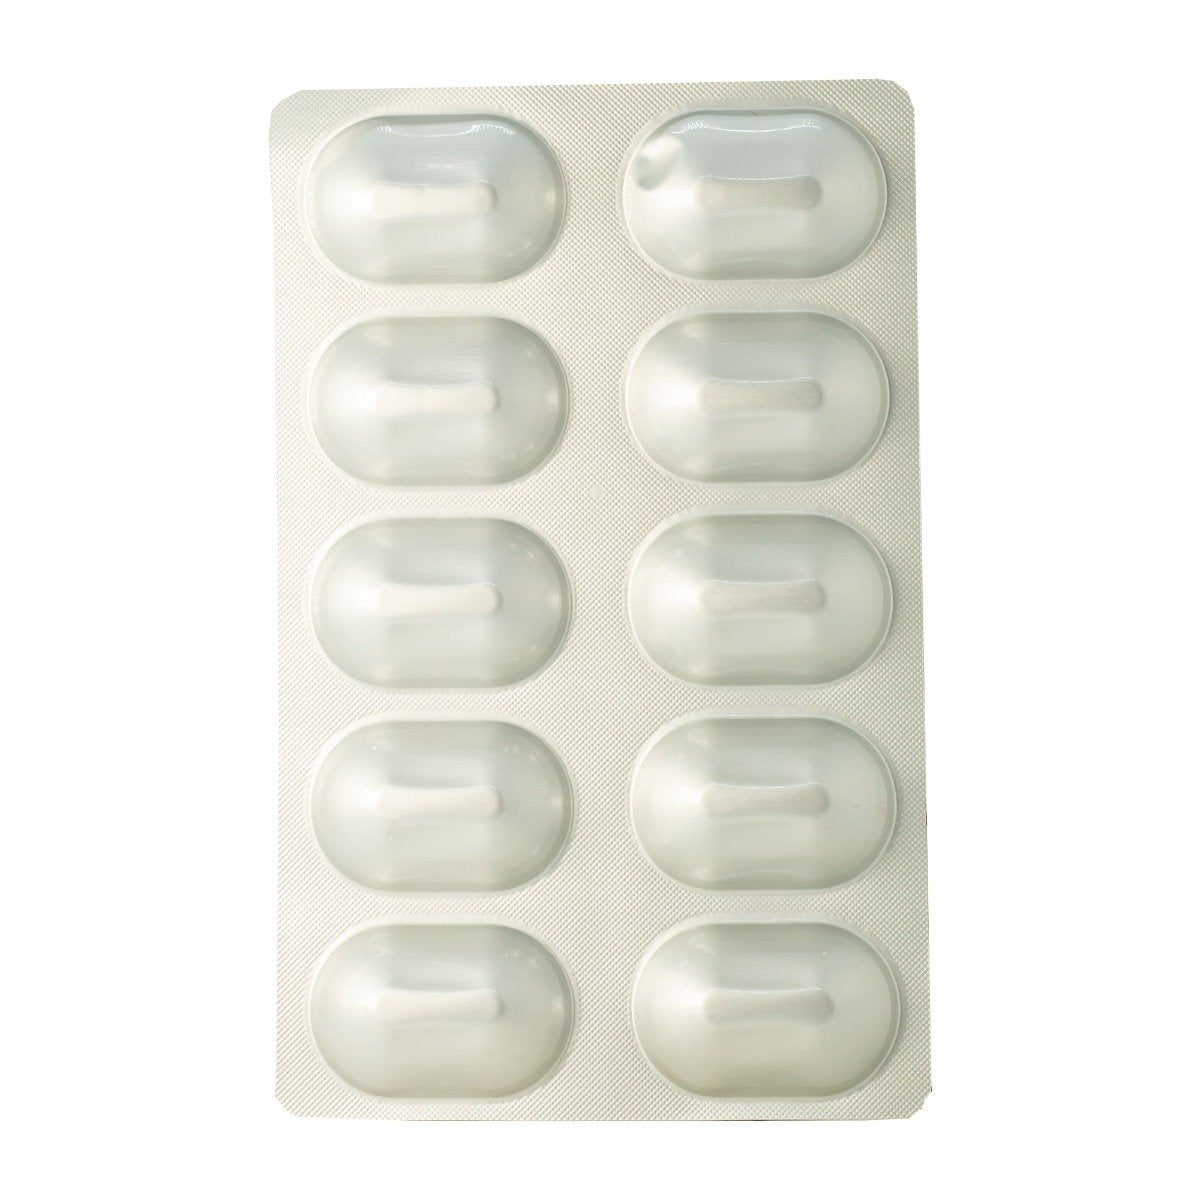 Galvus Met 50 mg-1000 mg - 30 Tablets - Bloom Pharmacy